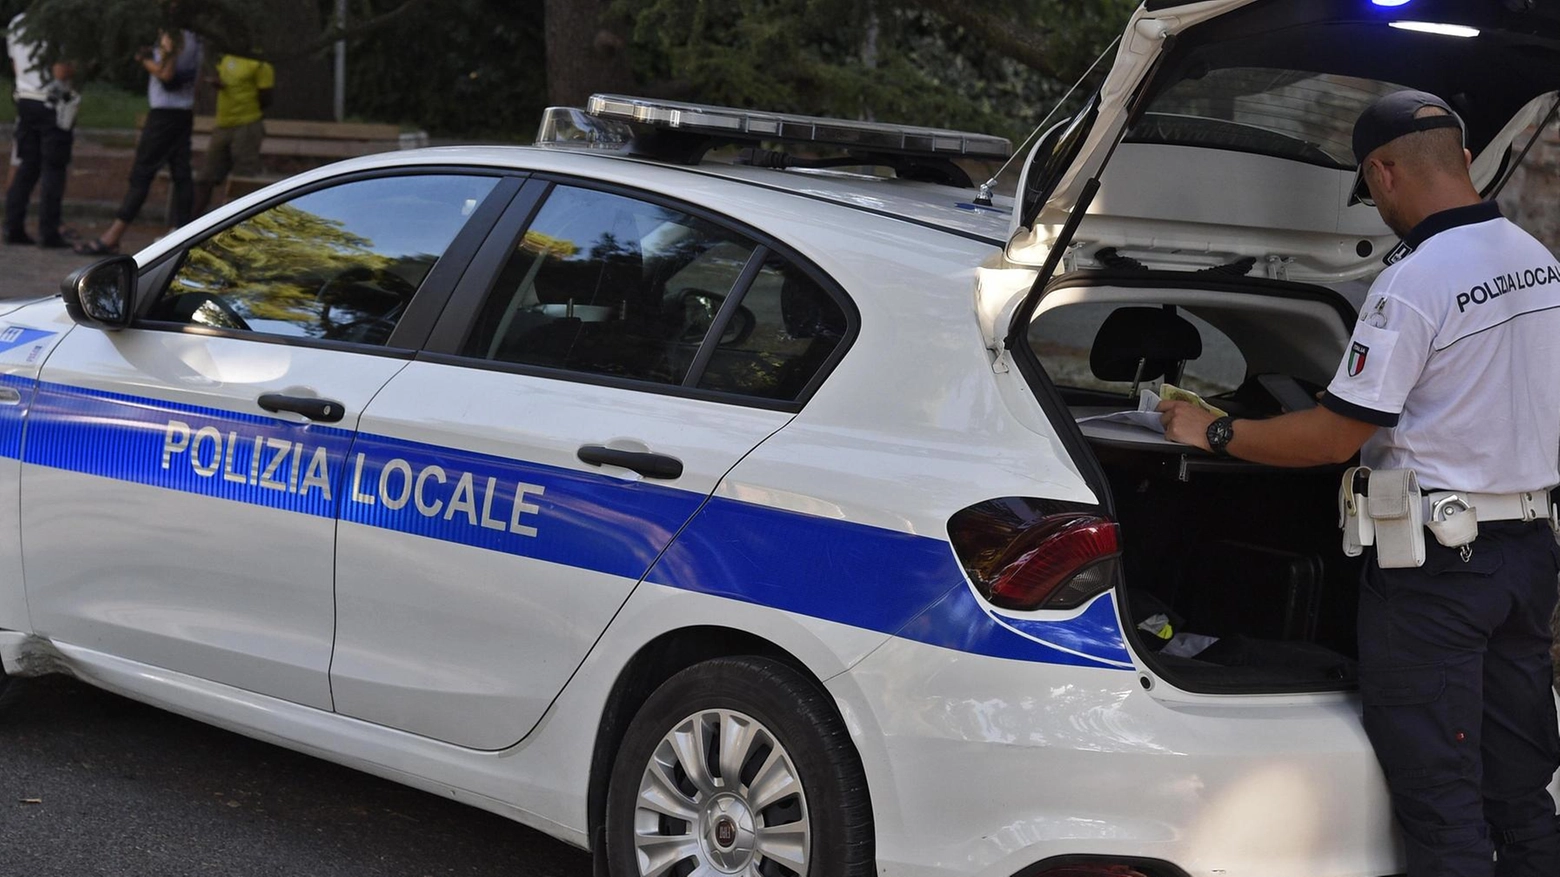 Sull’incidente di Villa Potenza sta svolgendo le indagini la Polizia locale (Foto d’archivio Calavita)